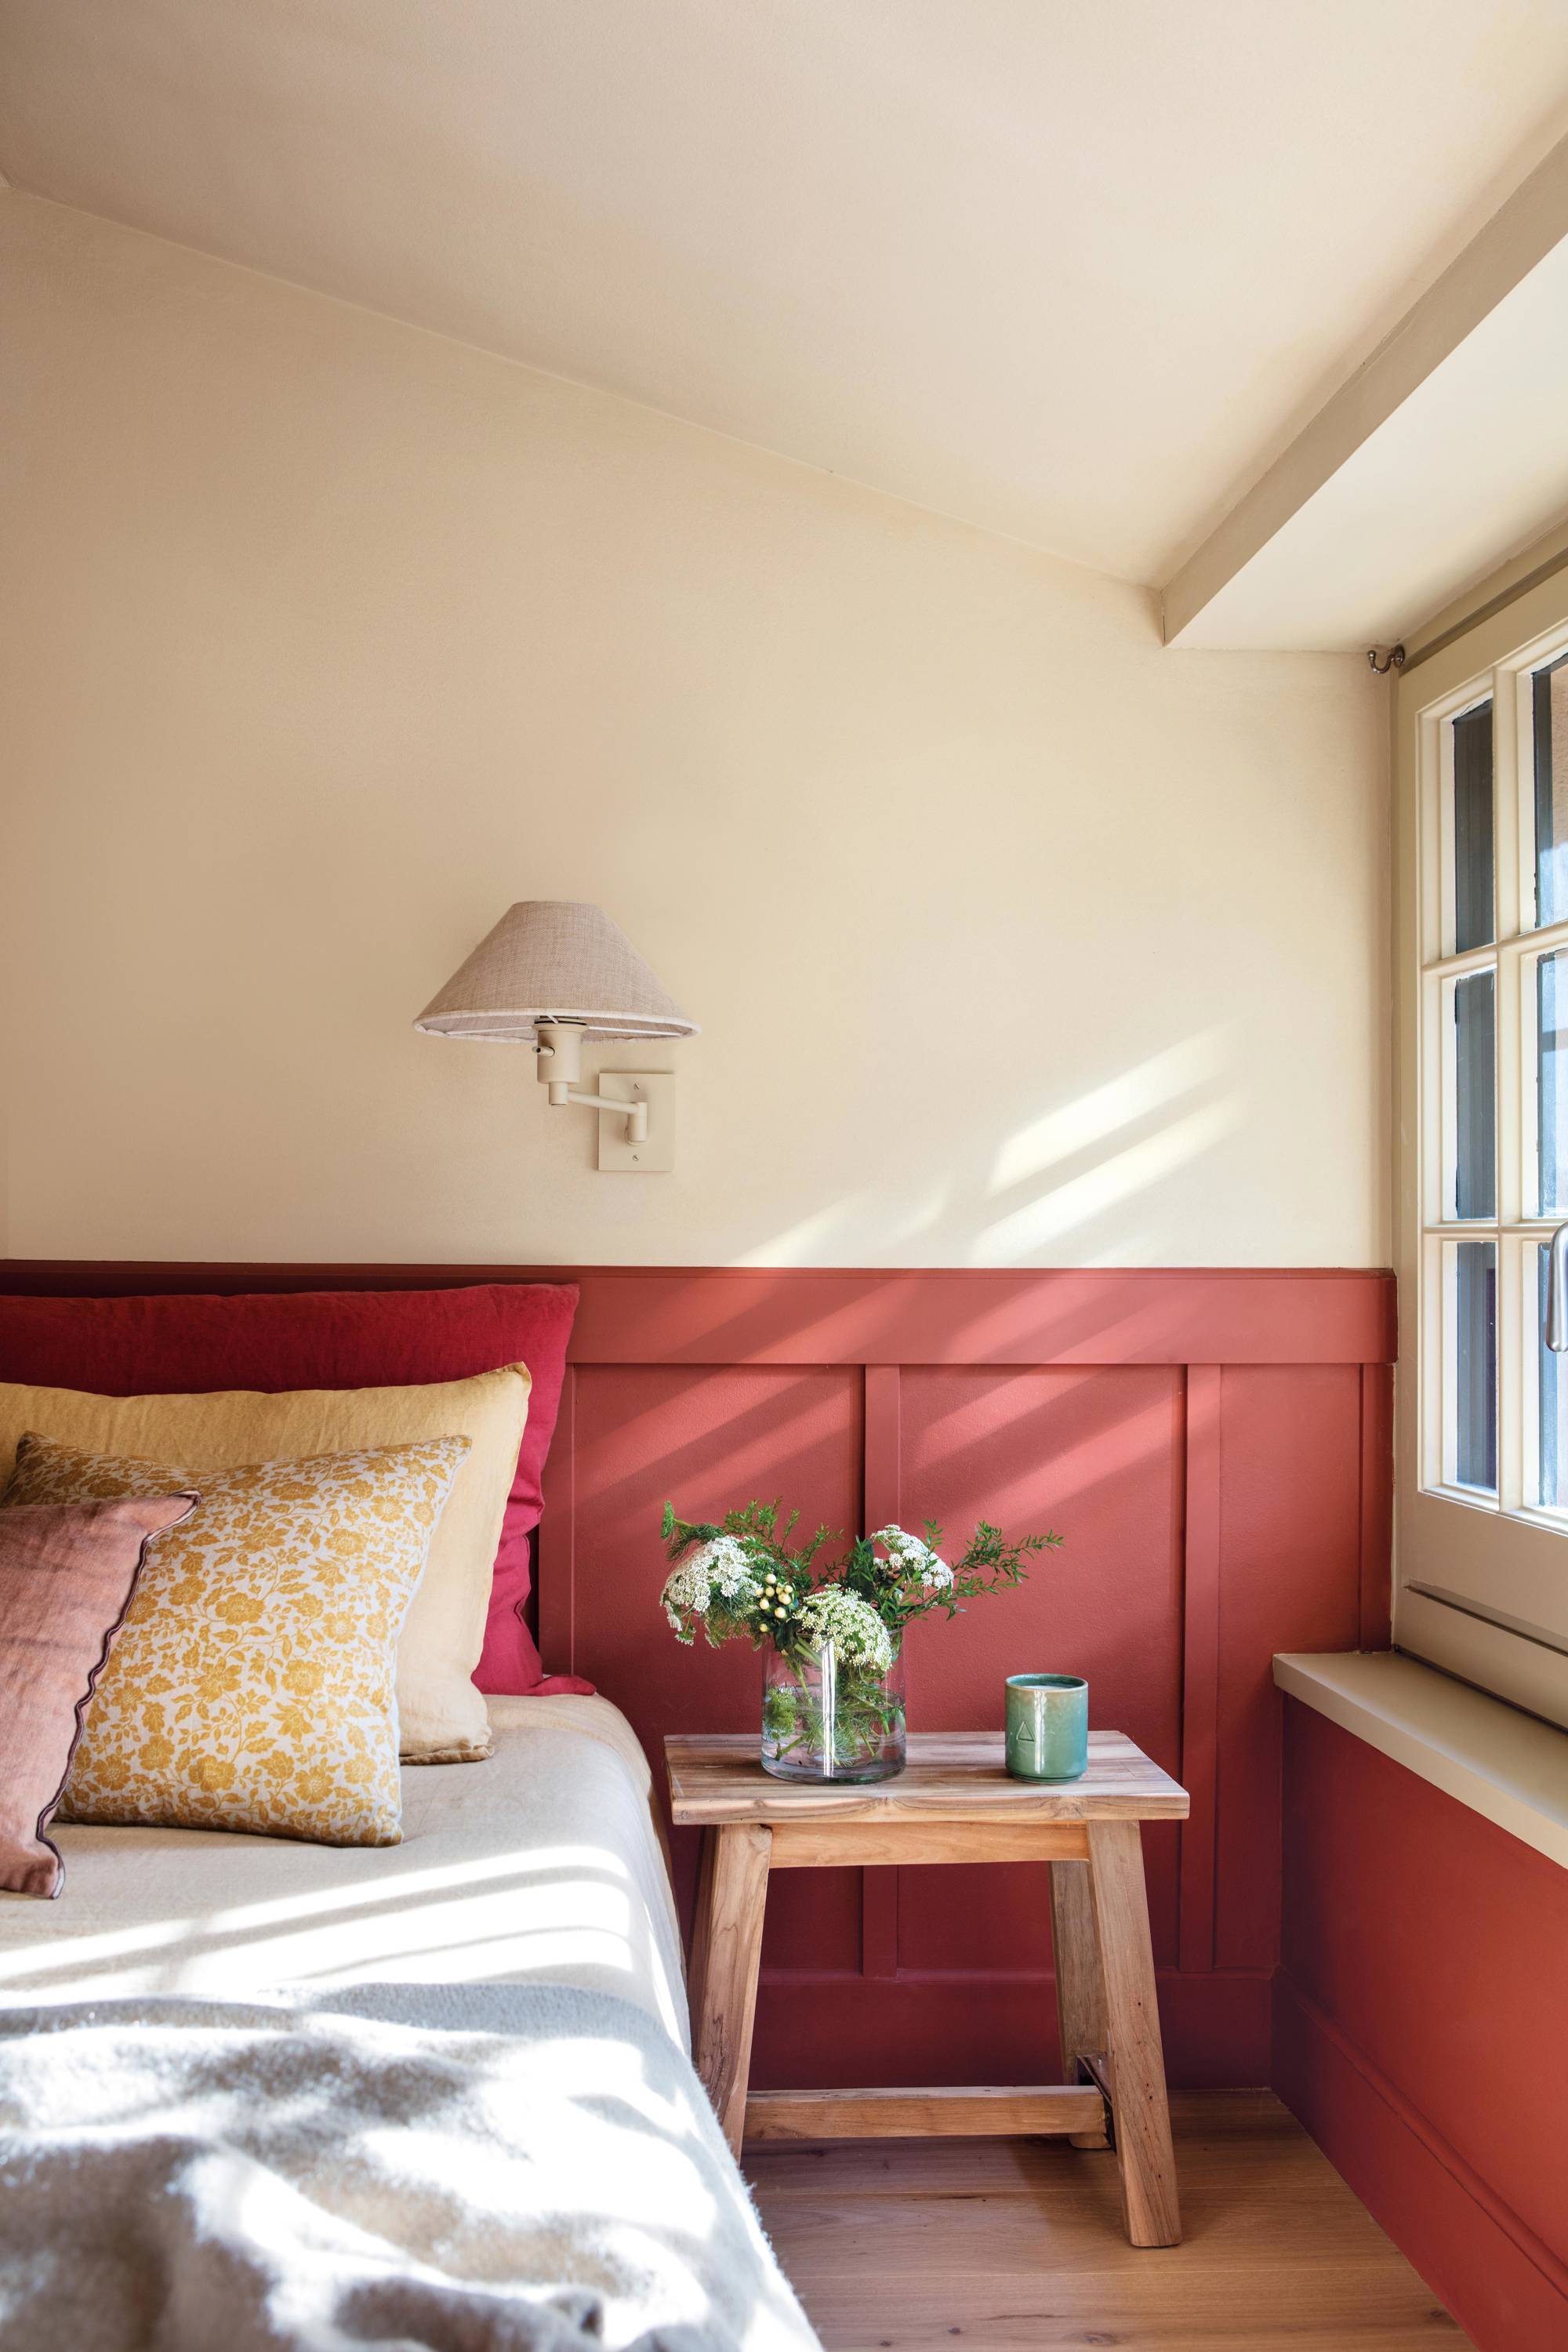 Dormitorio con arrimadero pintado de terracota.